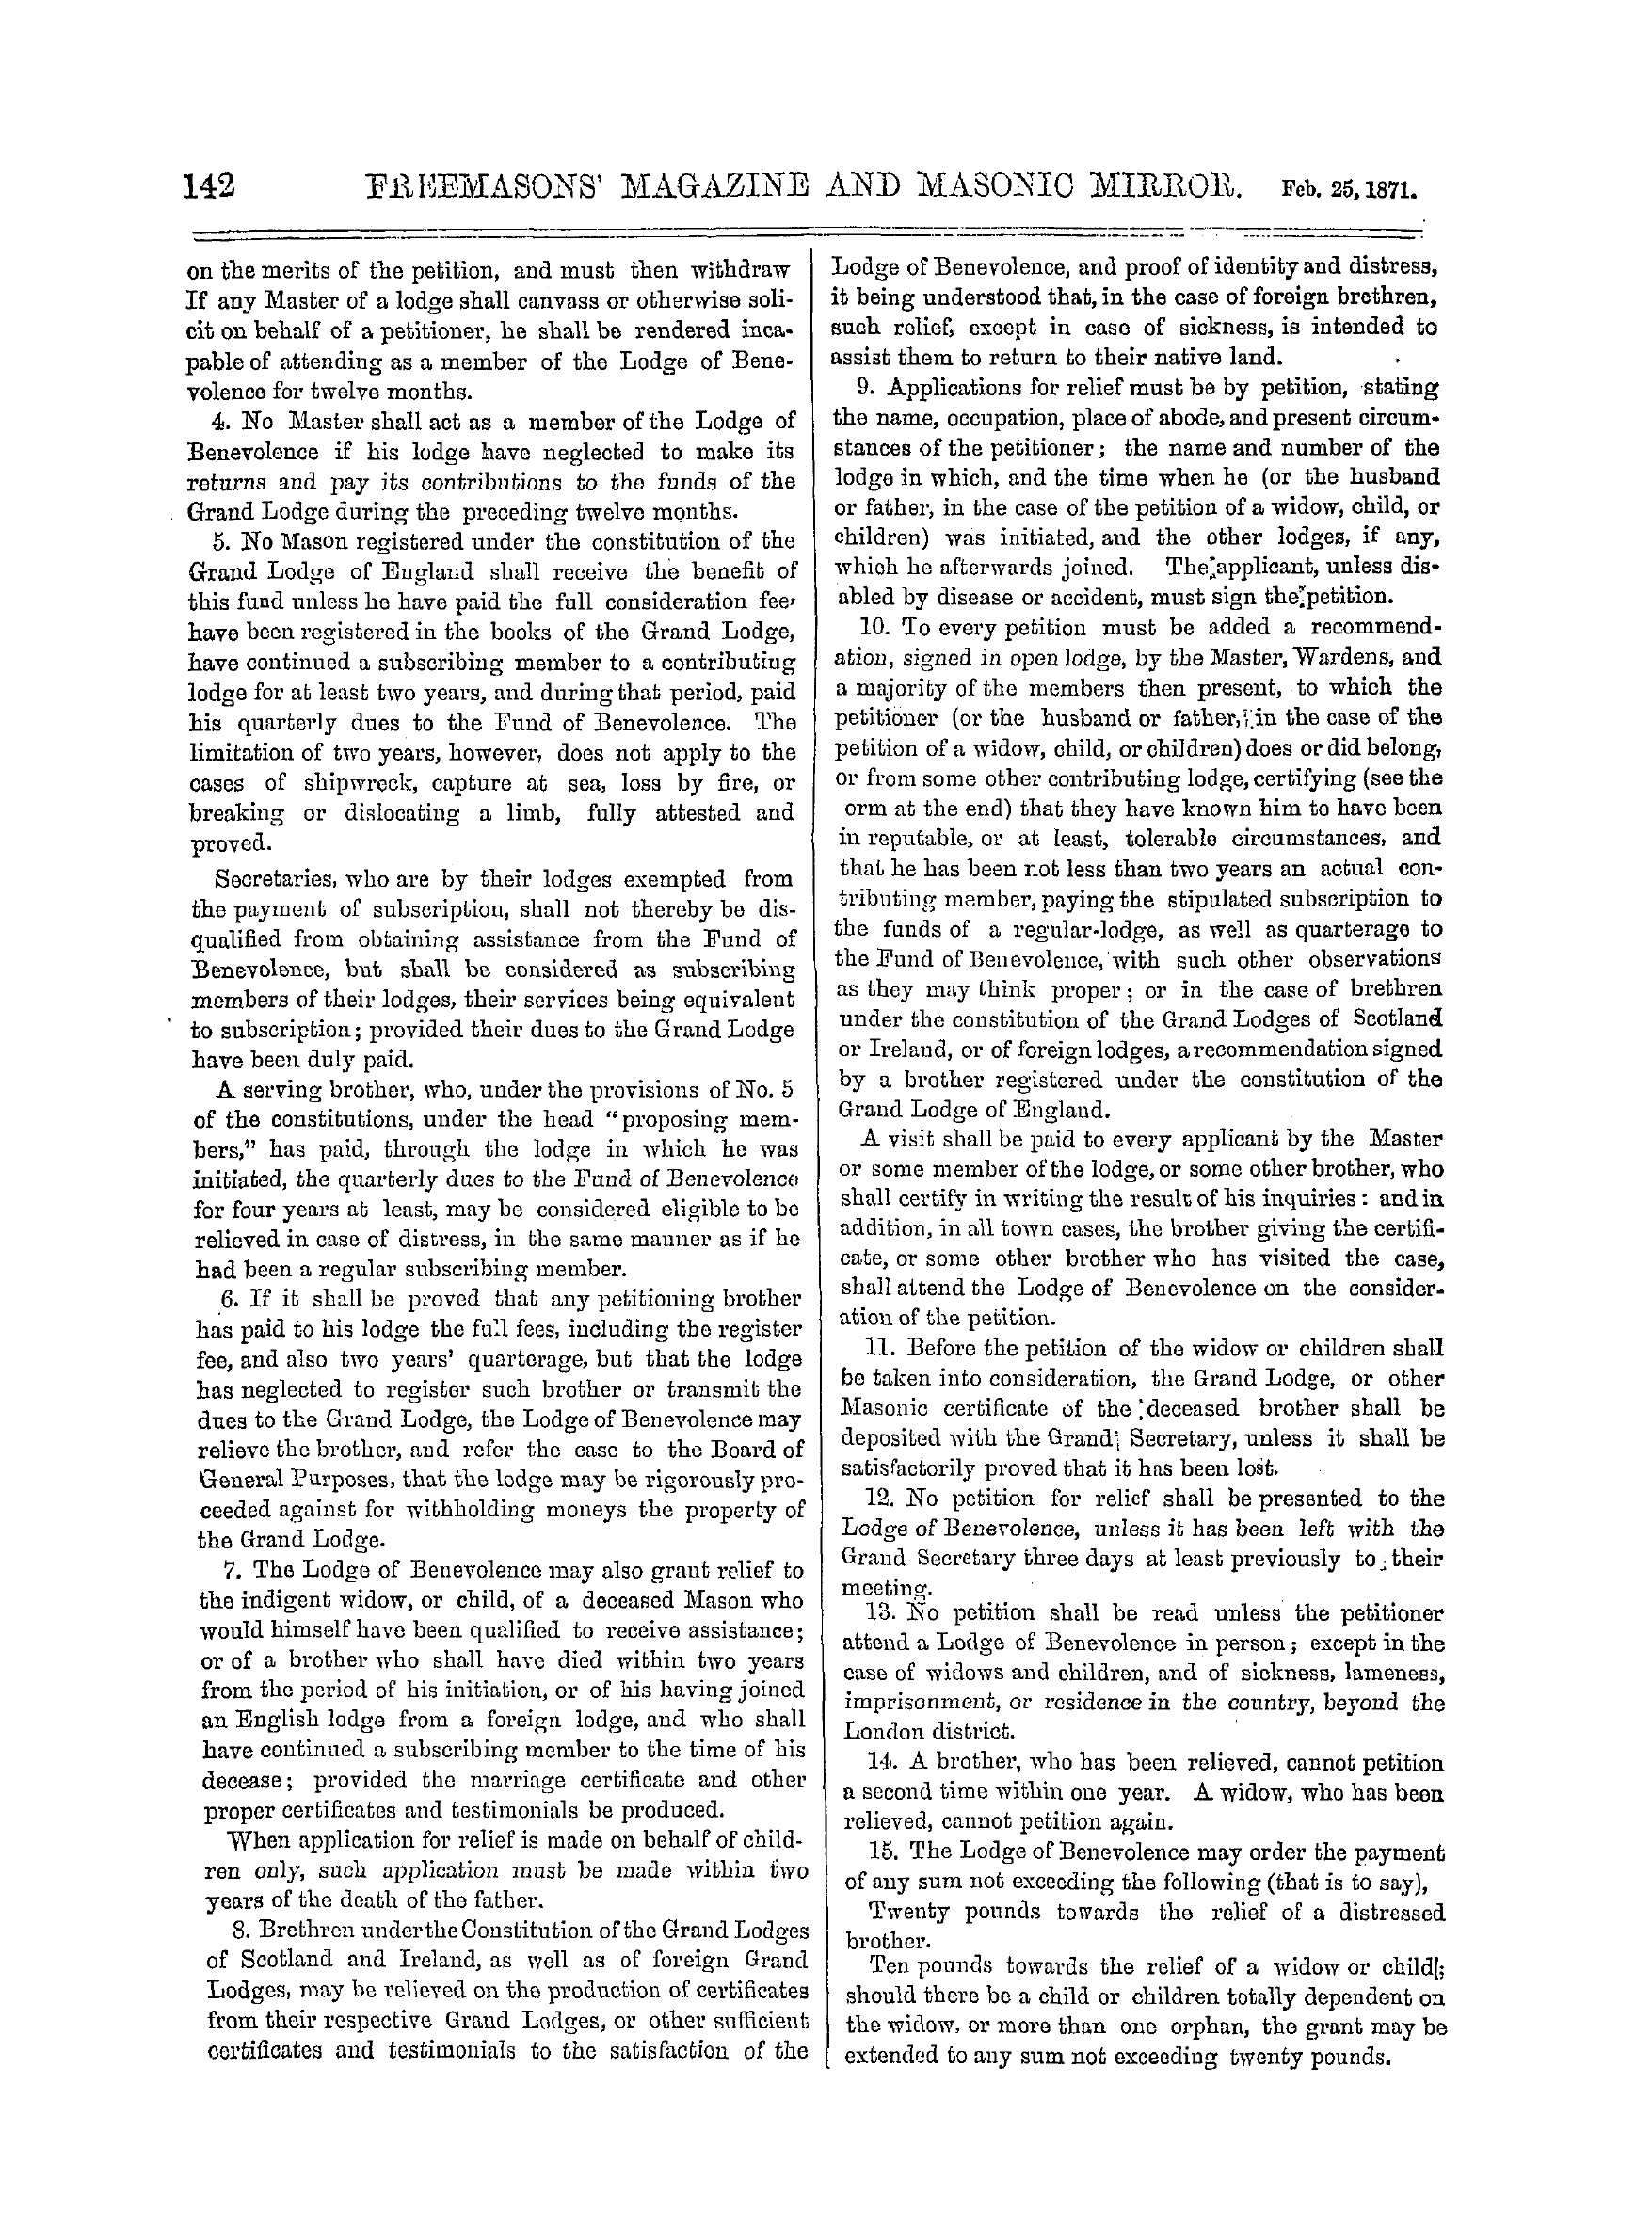 The Freemasons' Monthly Magazine: 1871-02-25: 2